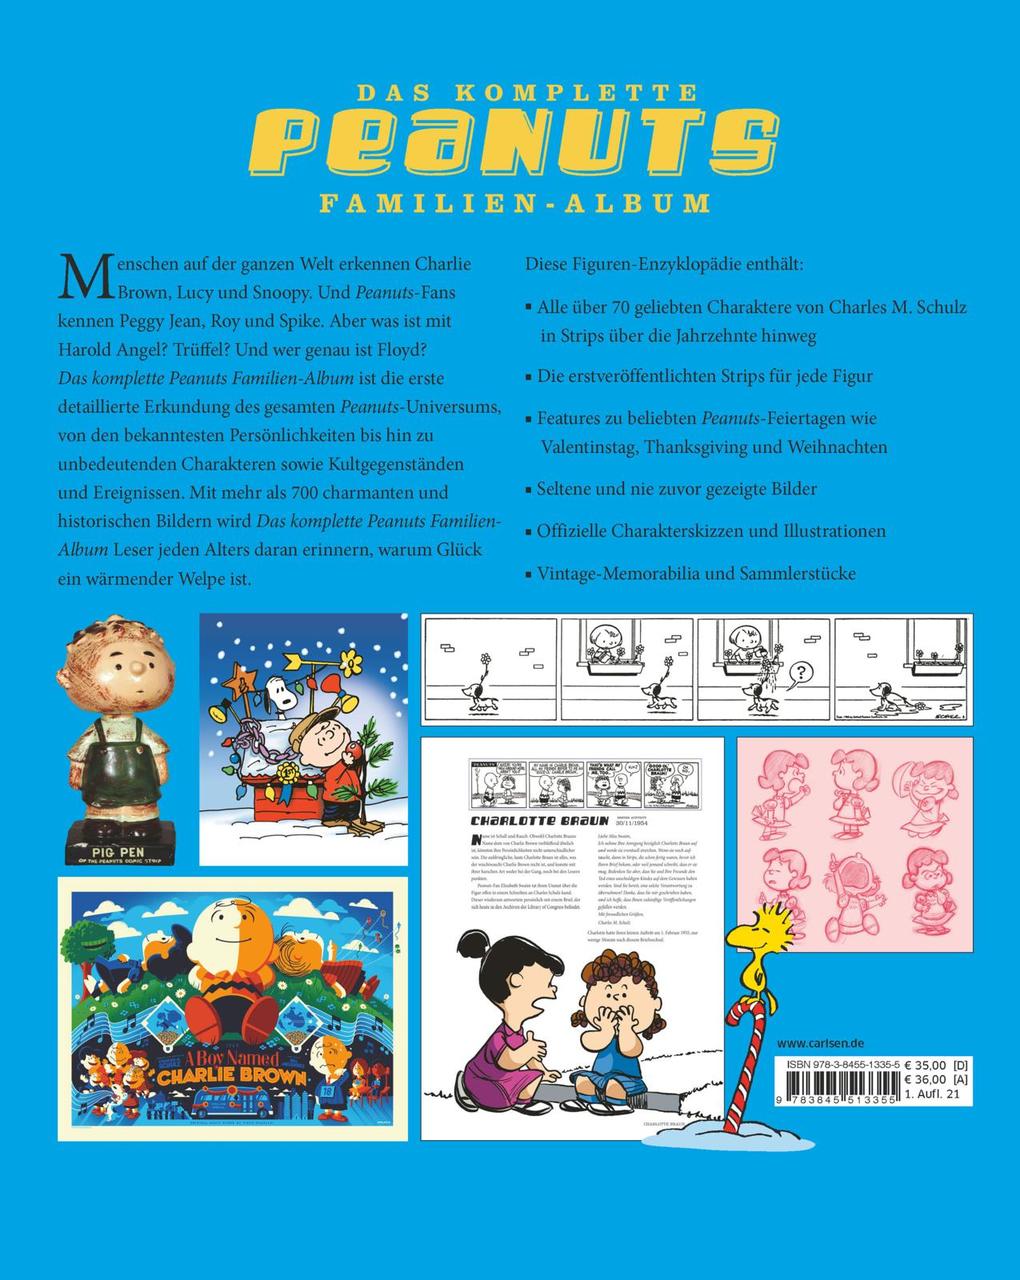 Das komplette Peanuts Familien-Album - Das ultimative Standardwerk zu den  Figuren von Charles M. Schulz von Charles M. Schulz (gebundenes Buch)